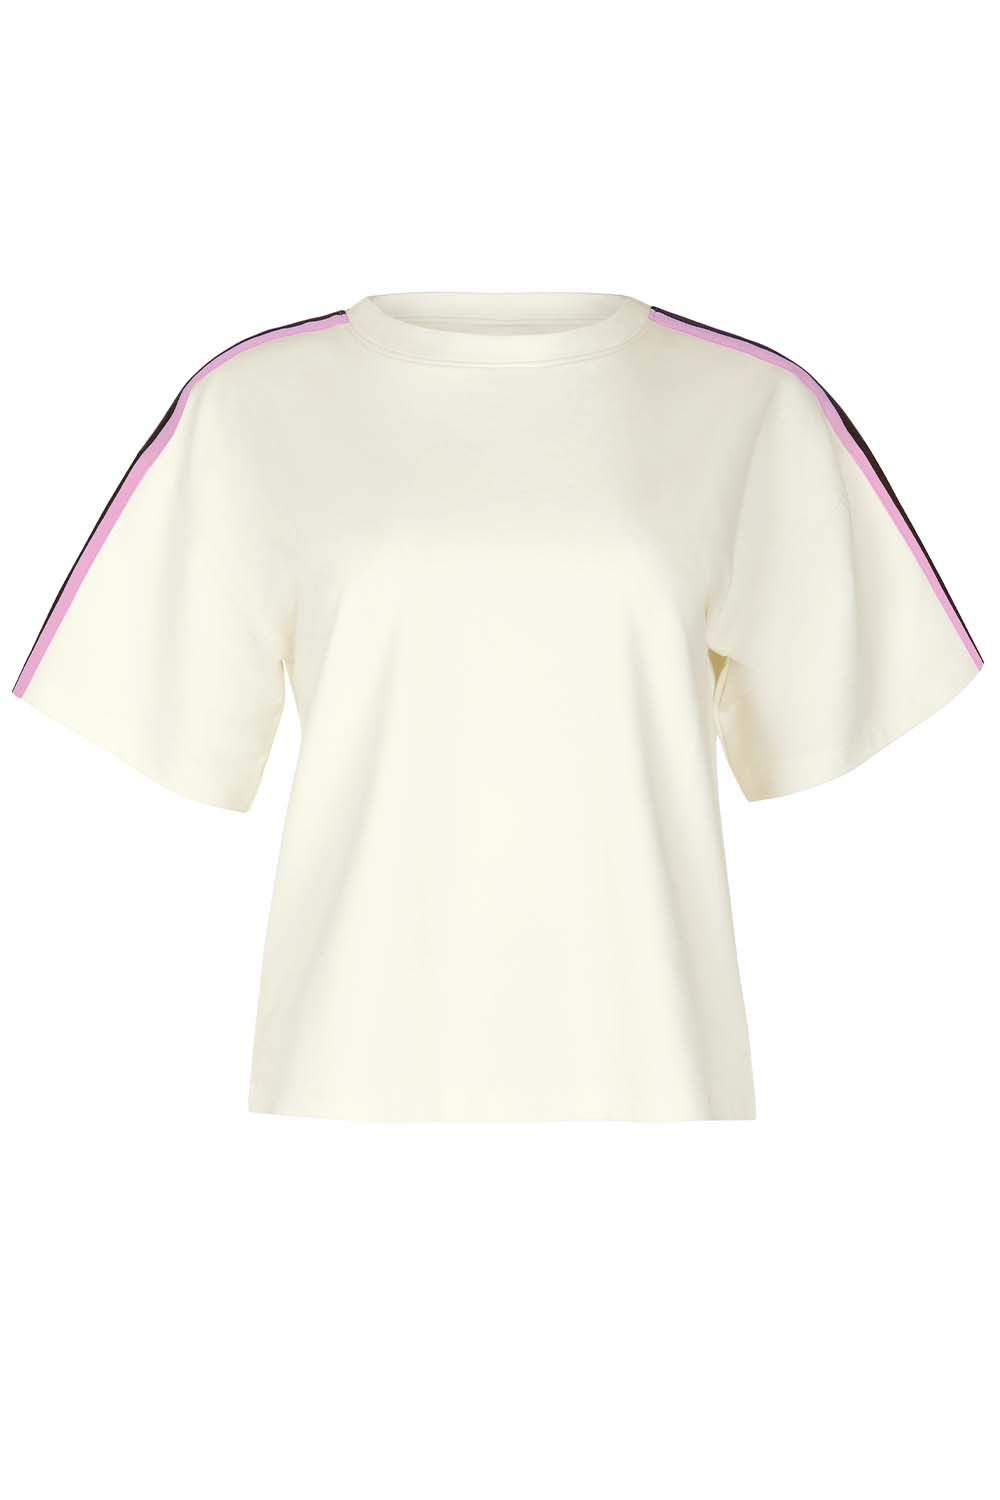 Cheek Shirt kurzarm Retromania 34 elfenbein günstig online kaufen